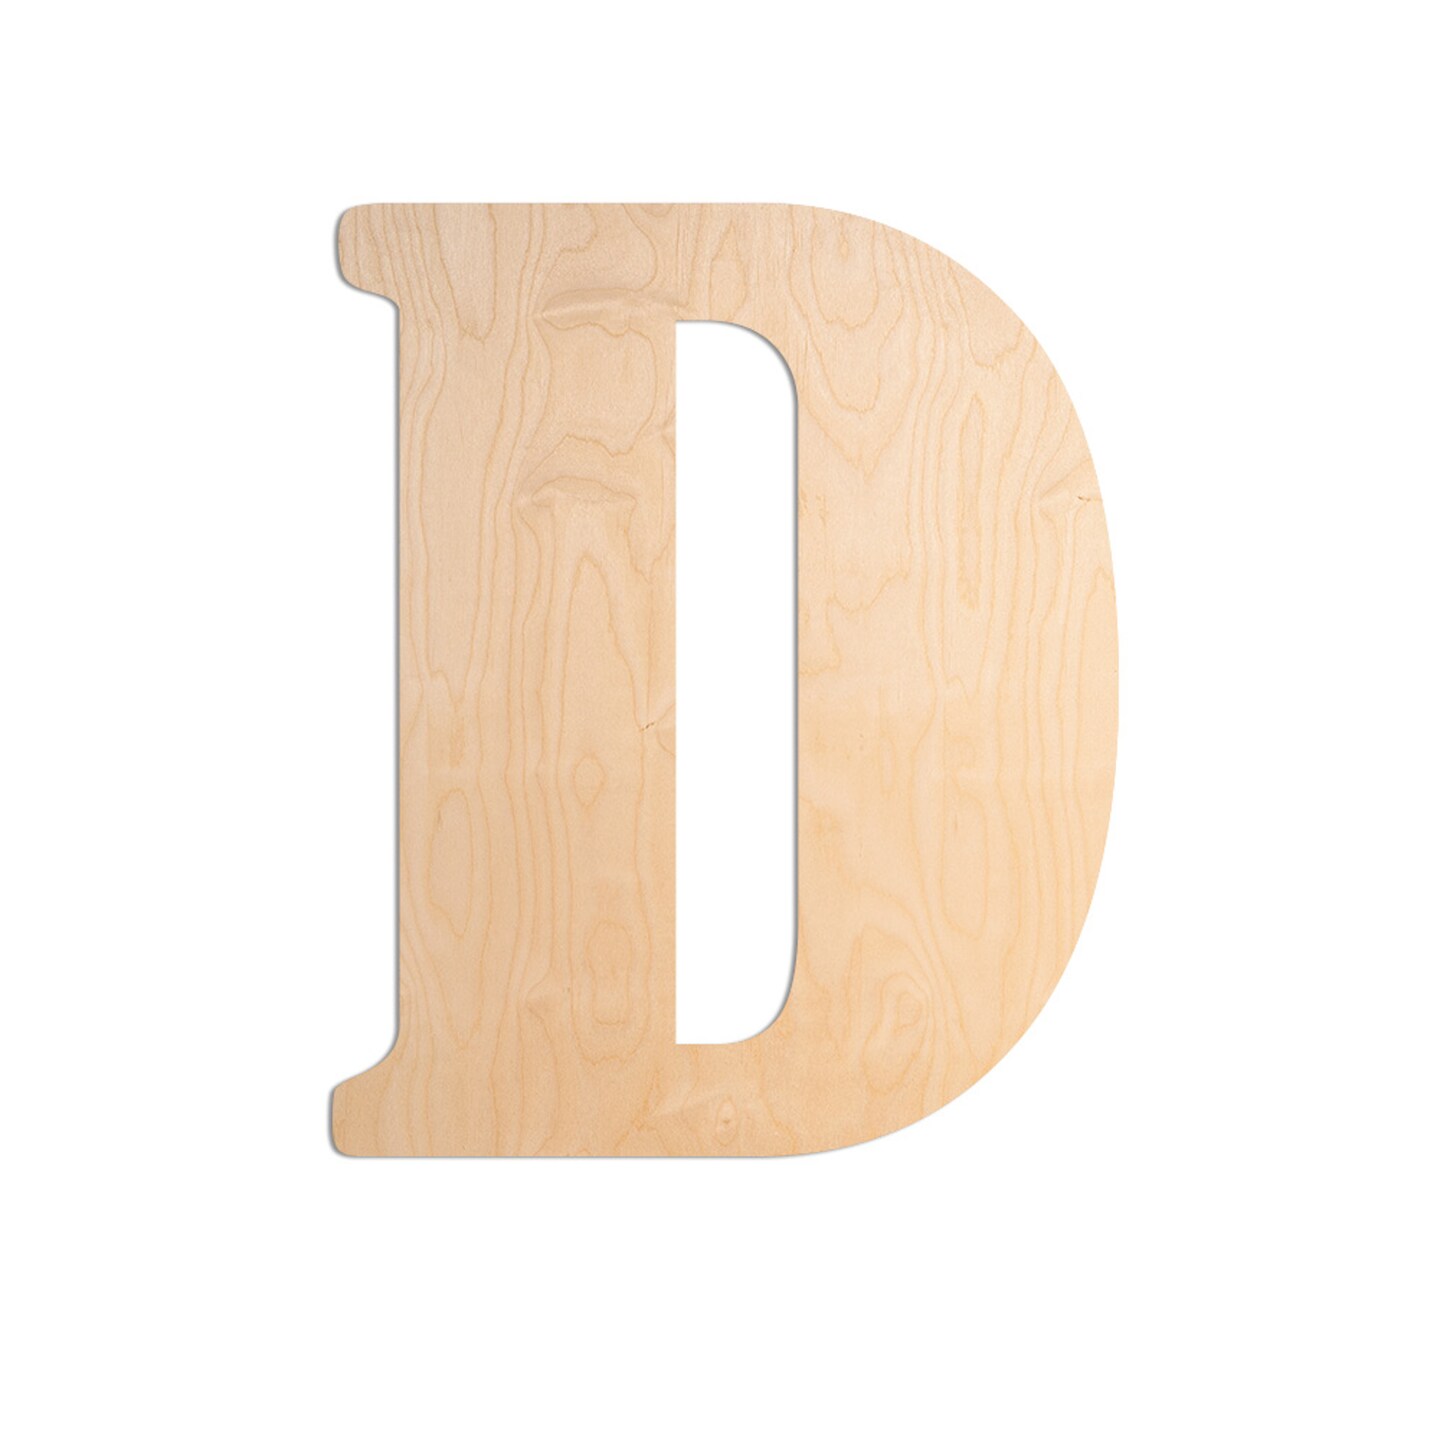 23 In. Letter D, Unfinished Vintage Wood Letter (D)